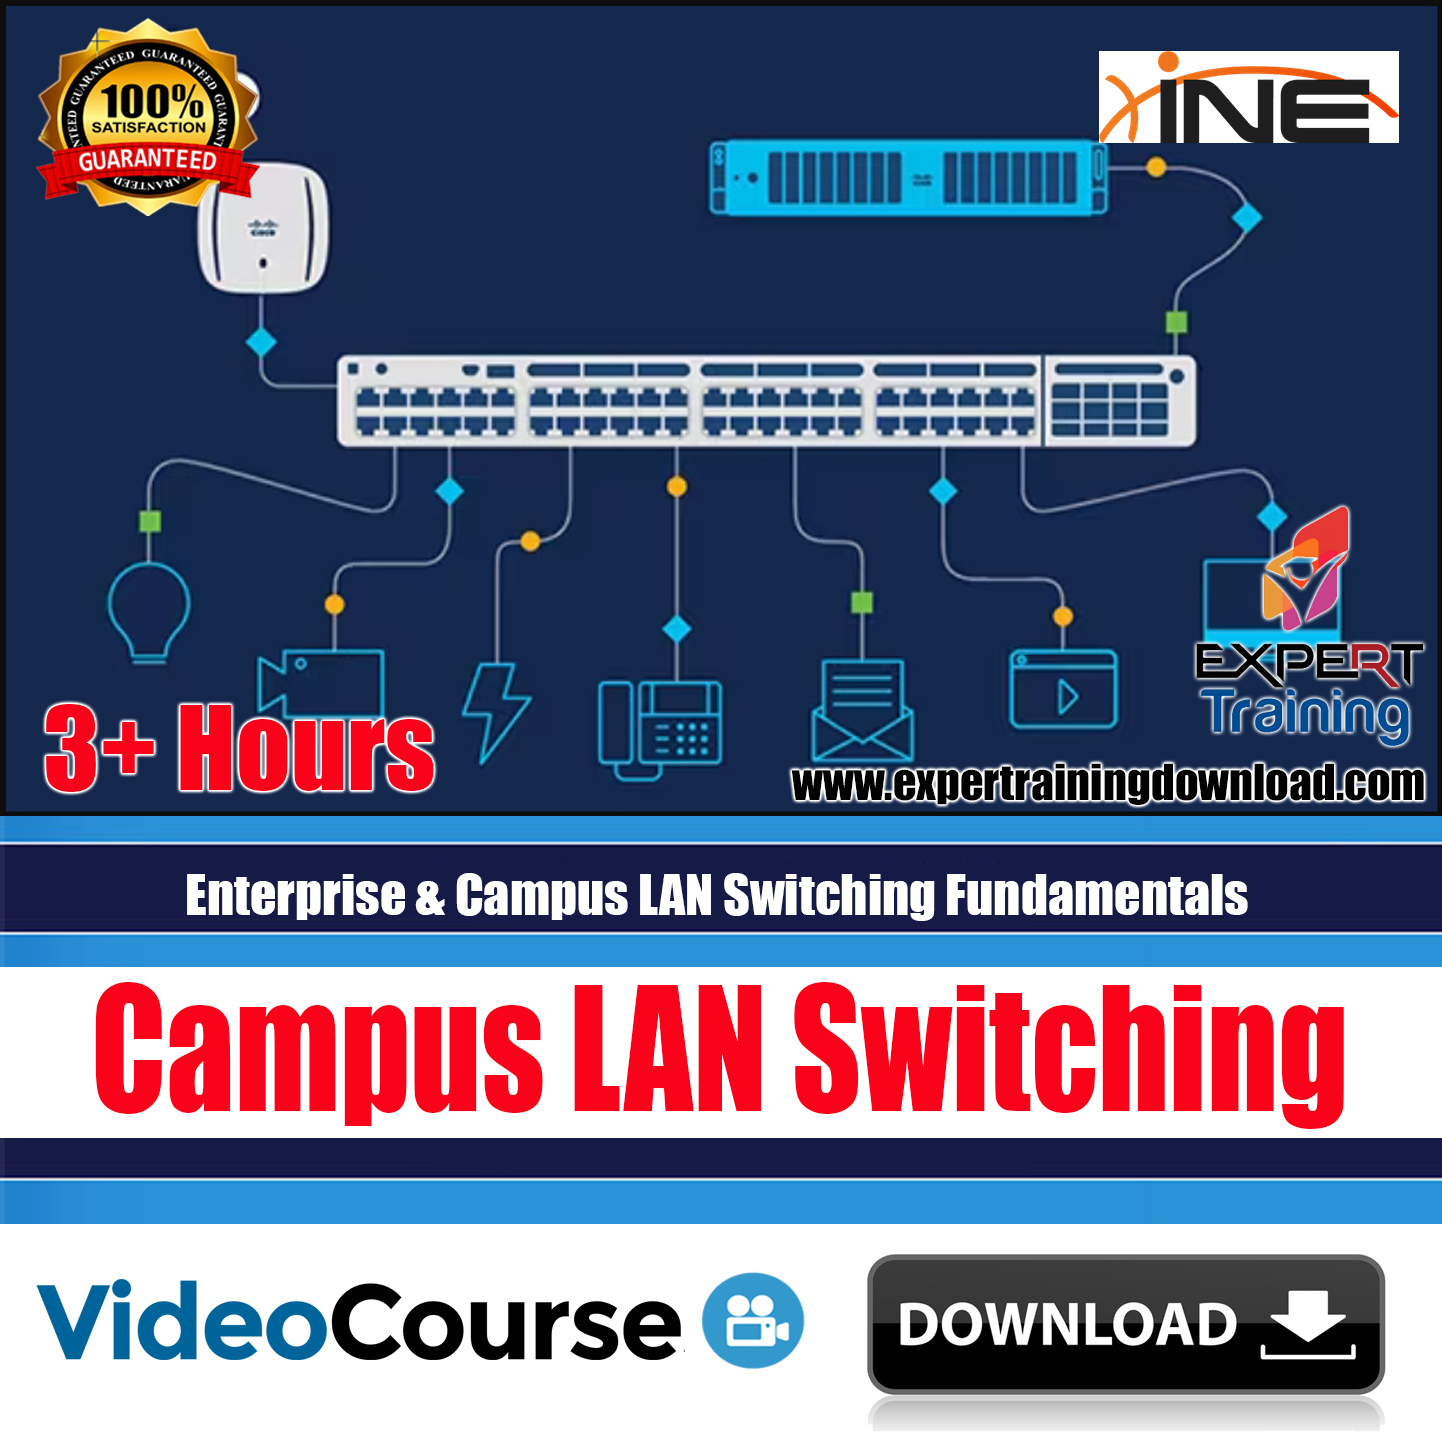 Enterprise & Campus LAN Switching Fundamentals